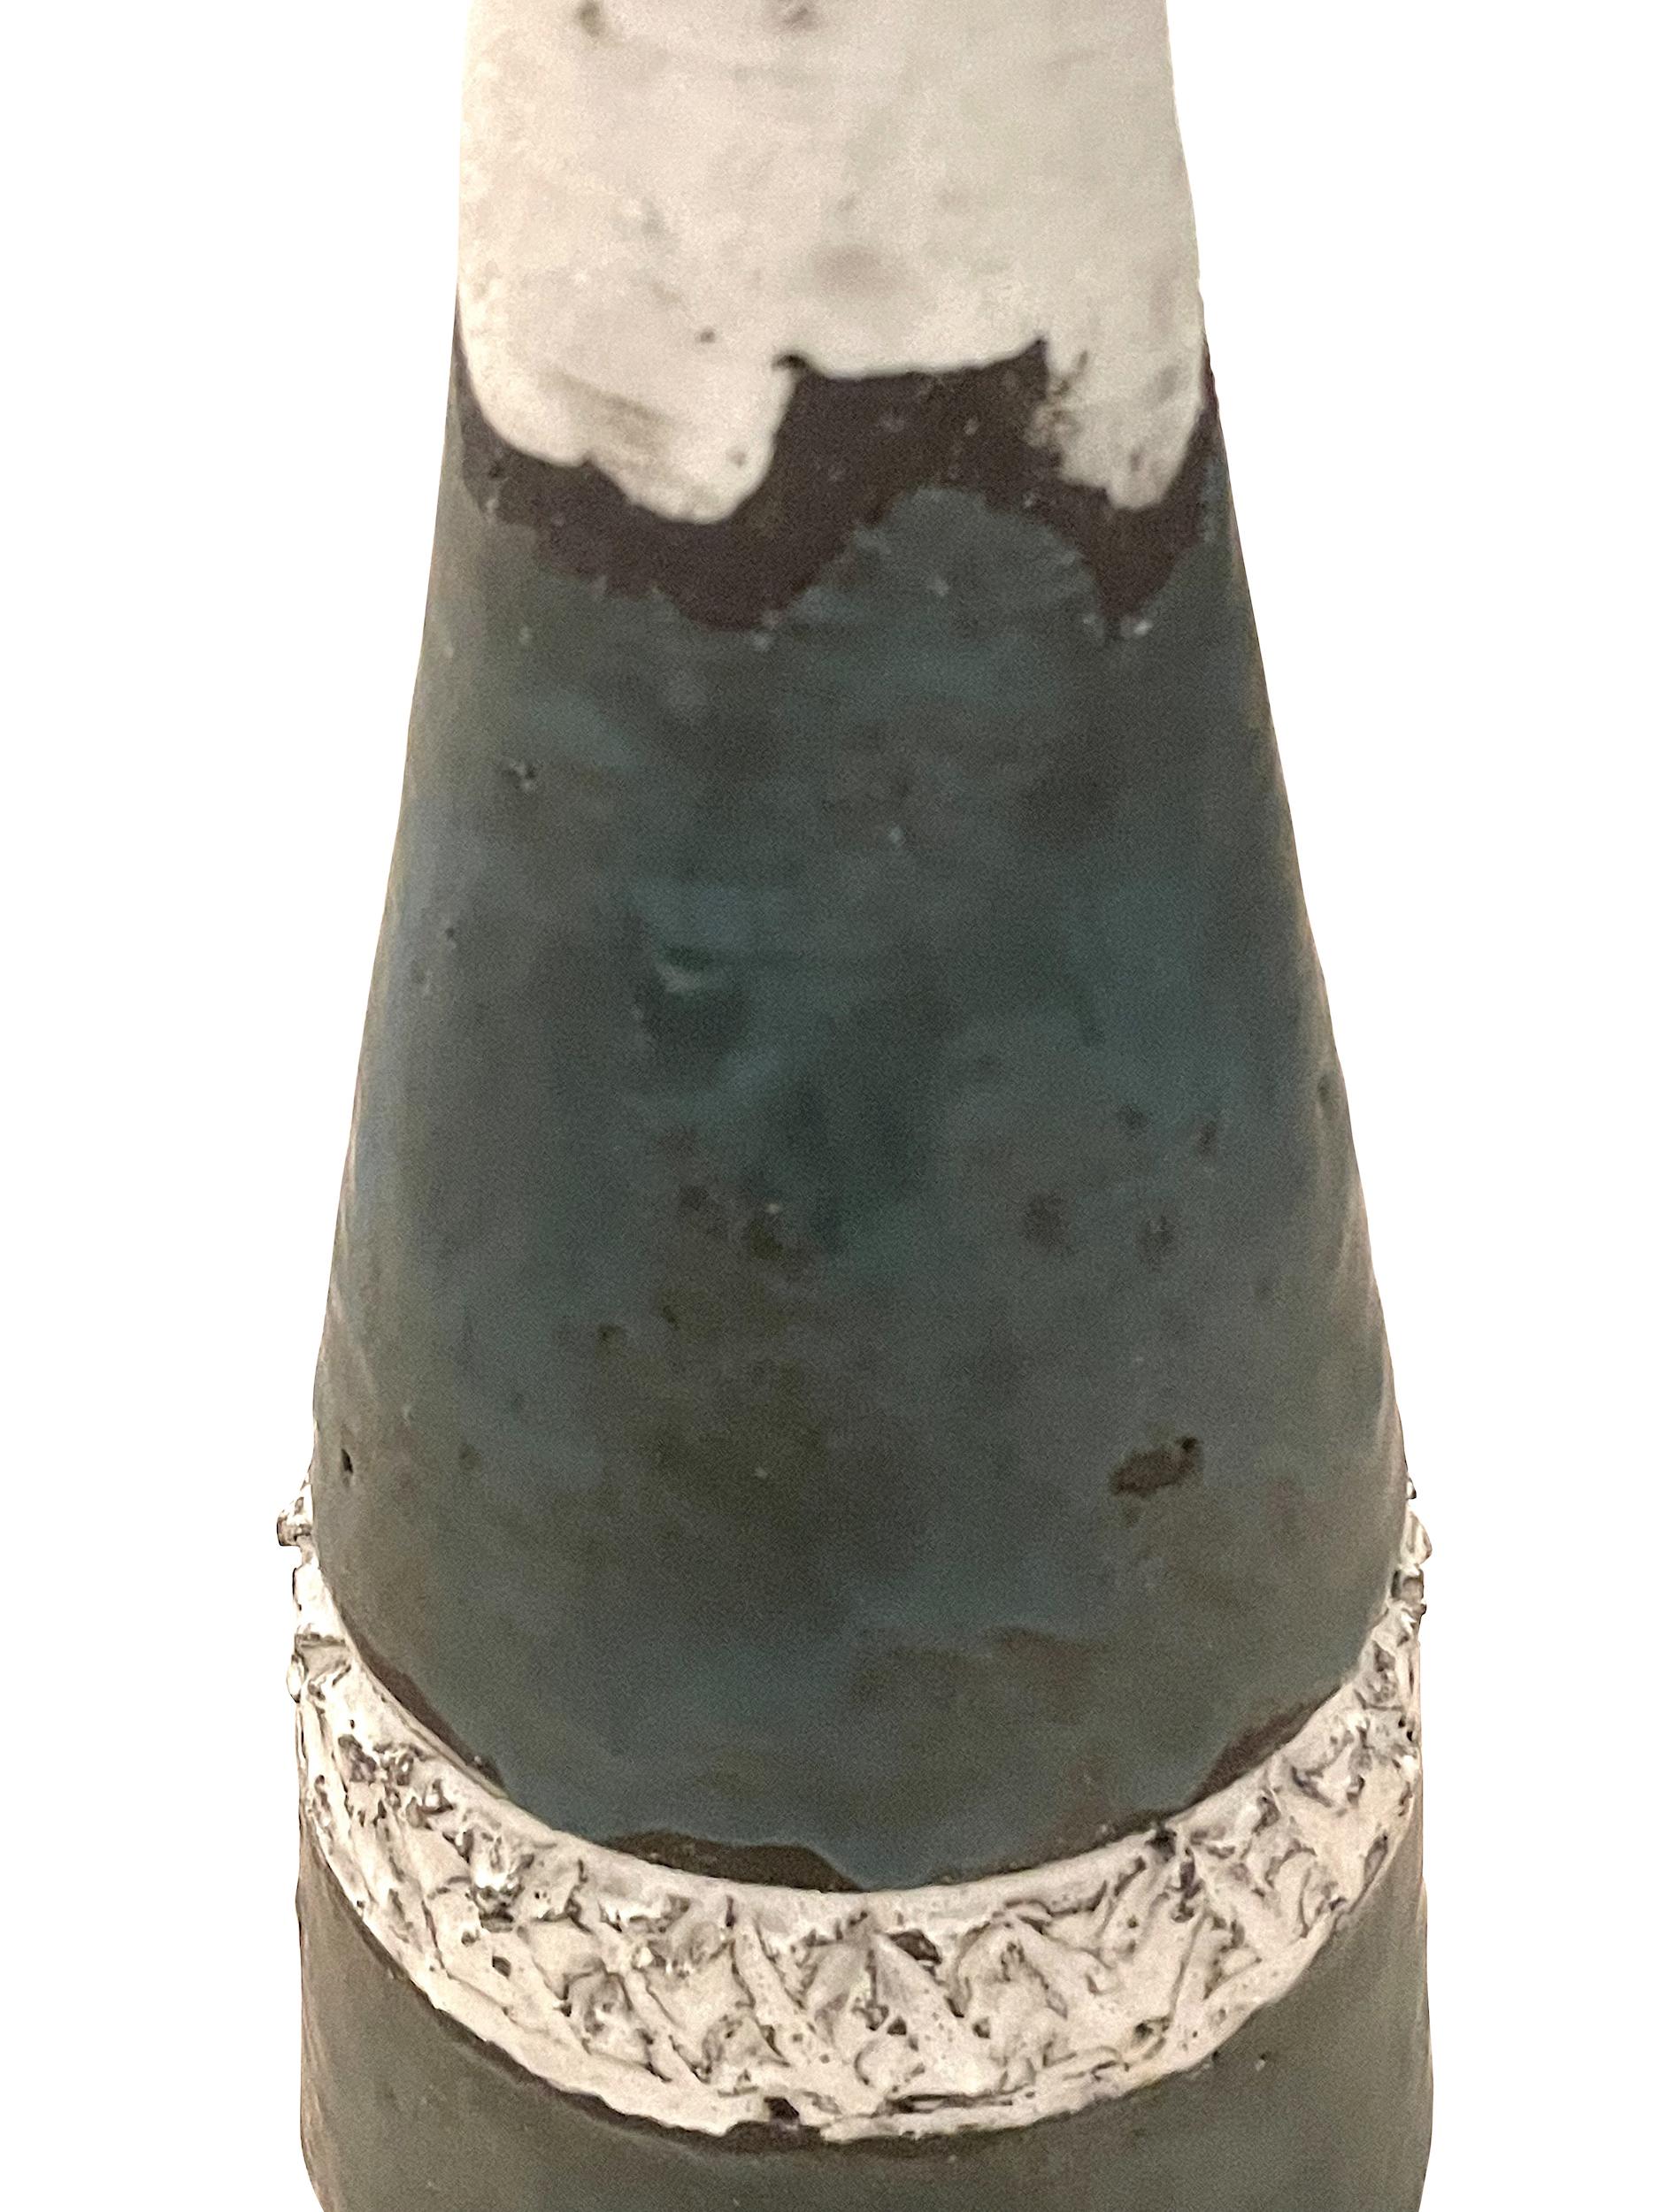 Belgische Vase in Flaschenform aus der Mitte des Jahrhunderts.
Dünne Mundöffnung.
Strukturierte weiße Oberfläche mit Bändern an der Ober- und Unterseite in Türkis.
